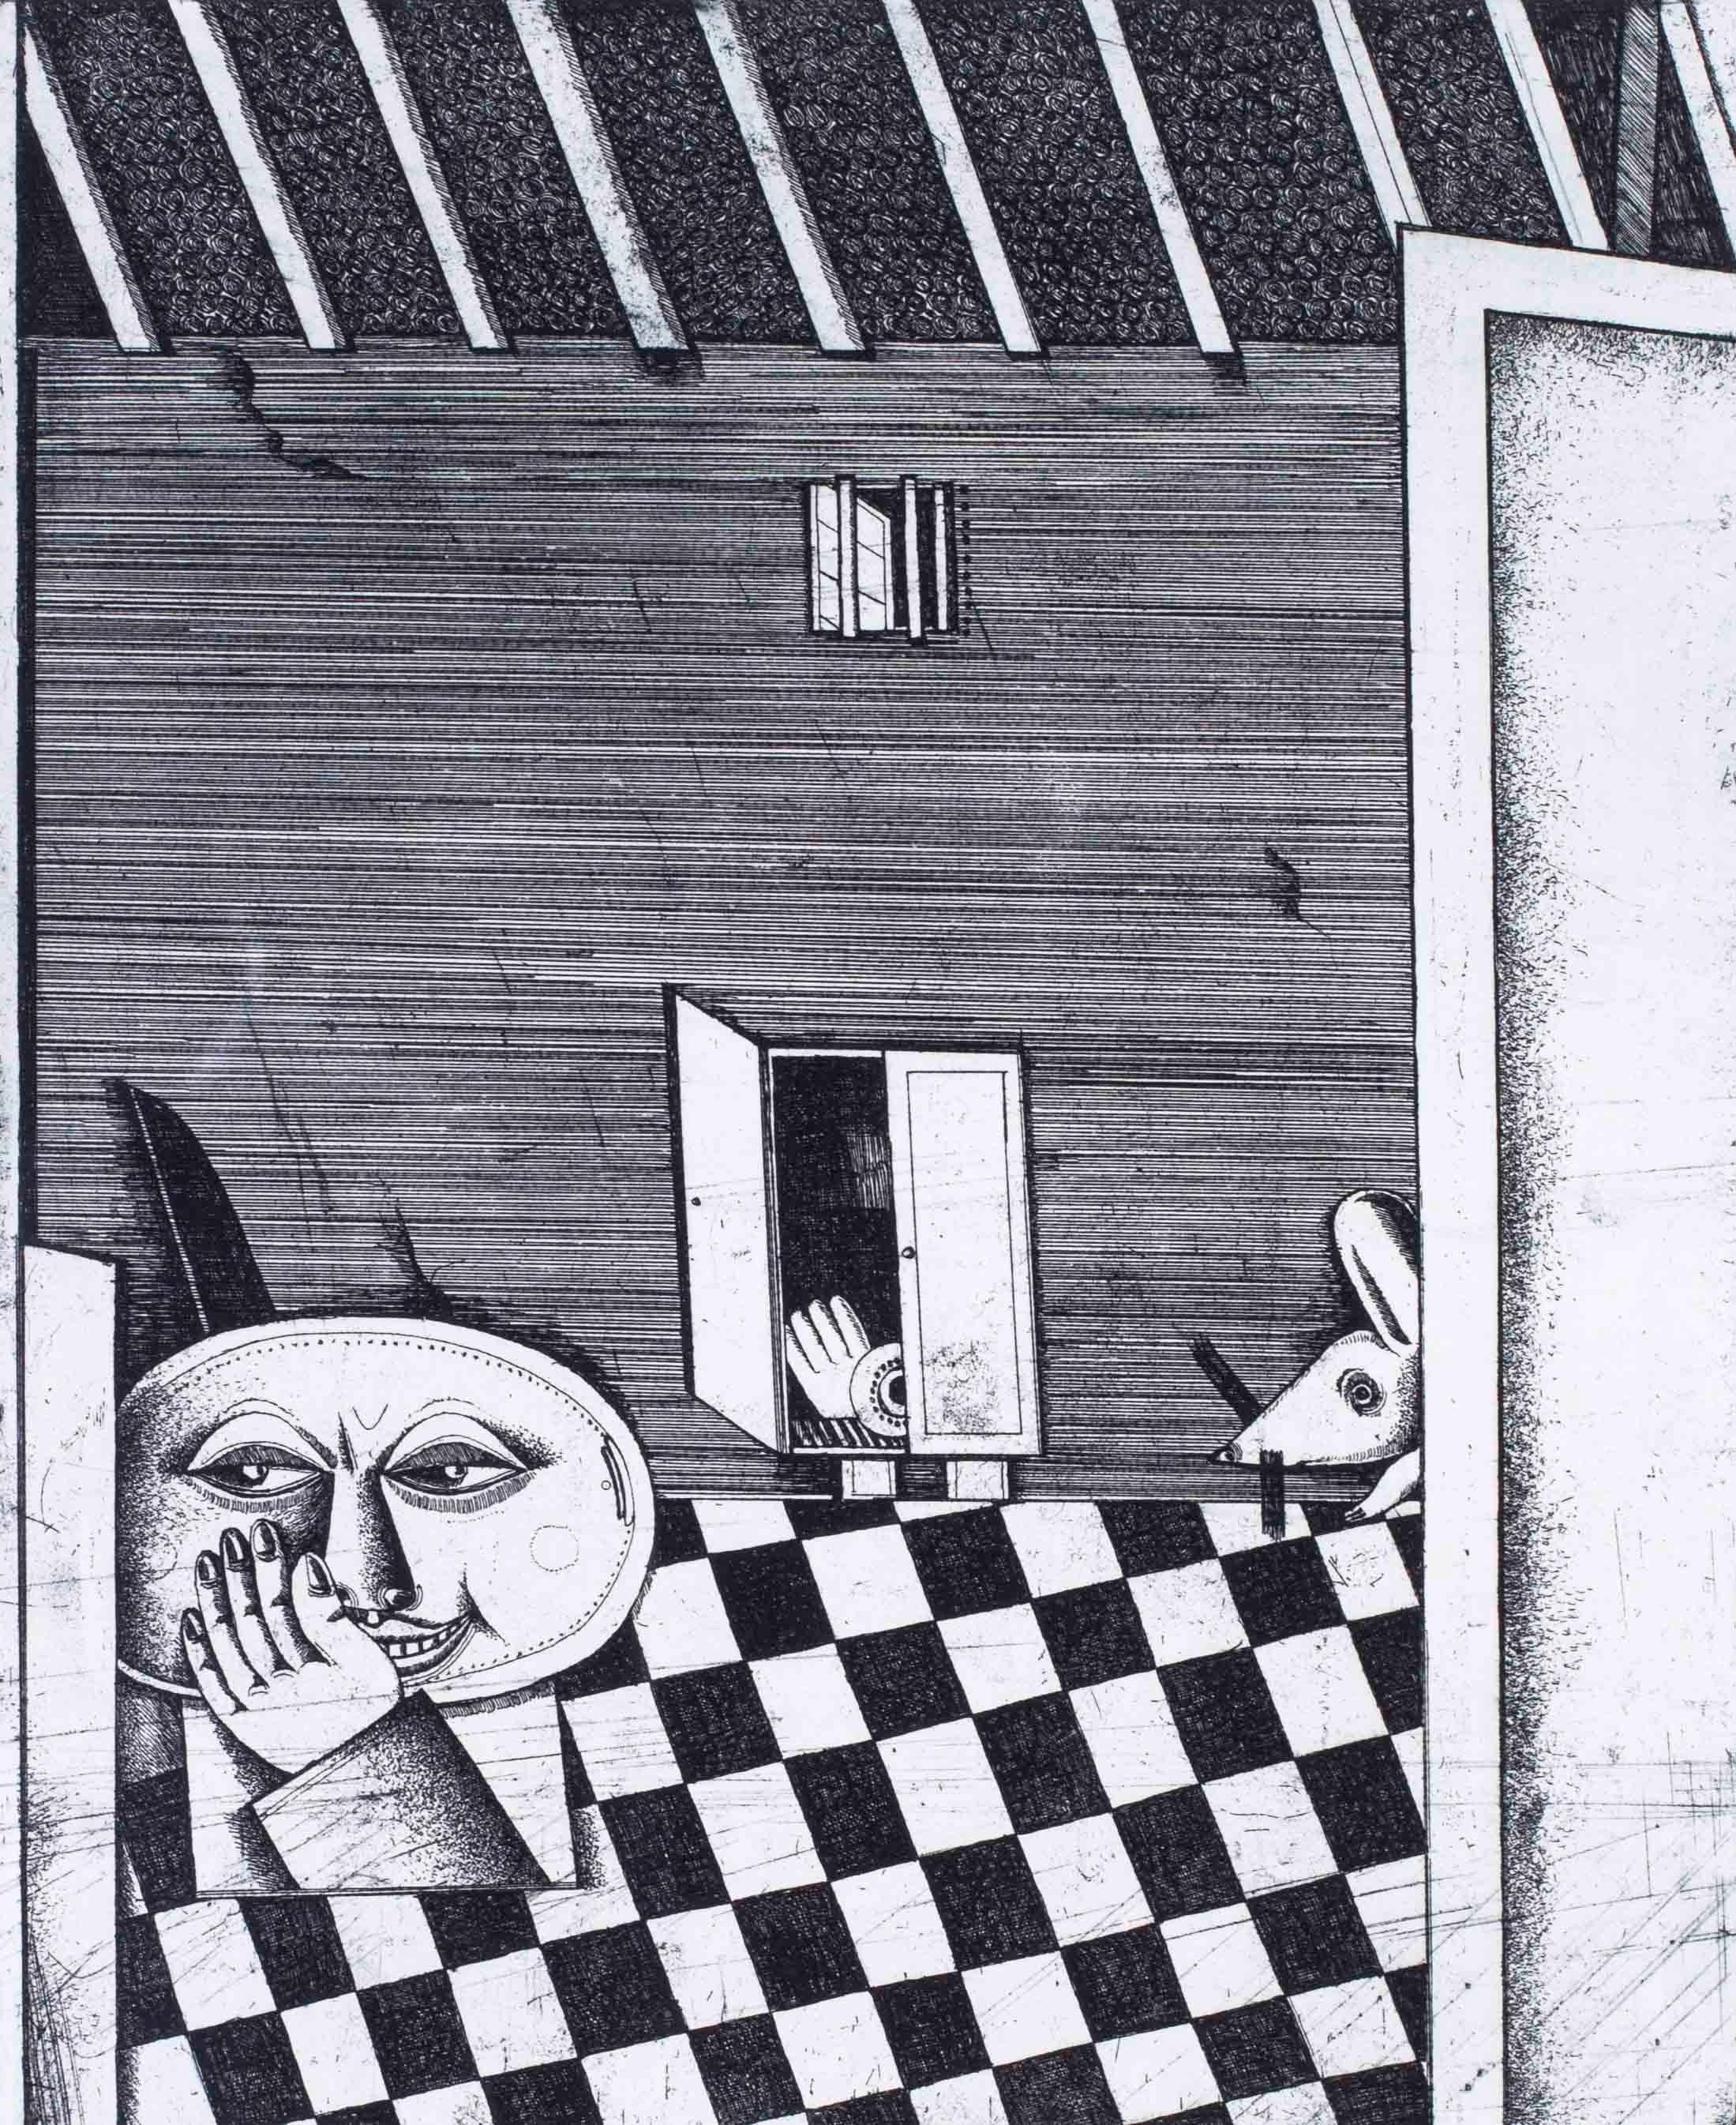 Gravures surréalistes en noir et blanc de l'artiste allemand Christoph Muhil des années 1970  - Print de Unknown